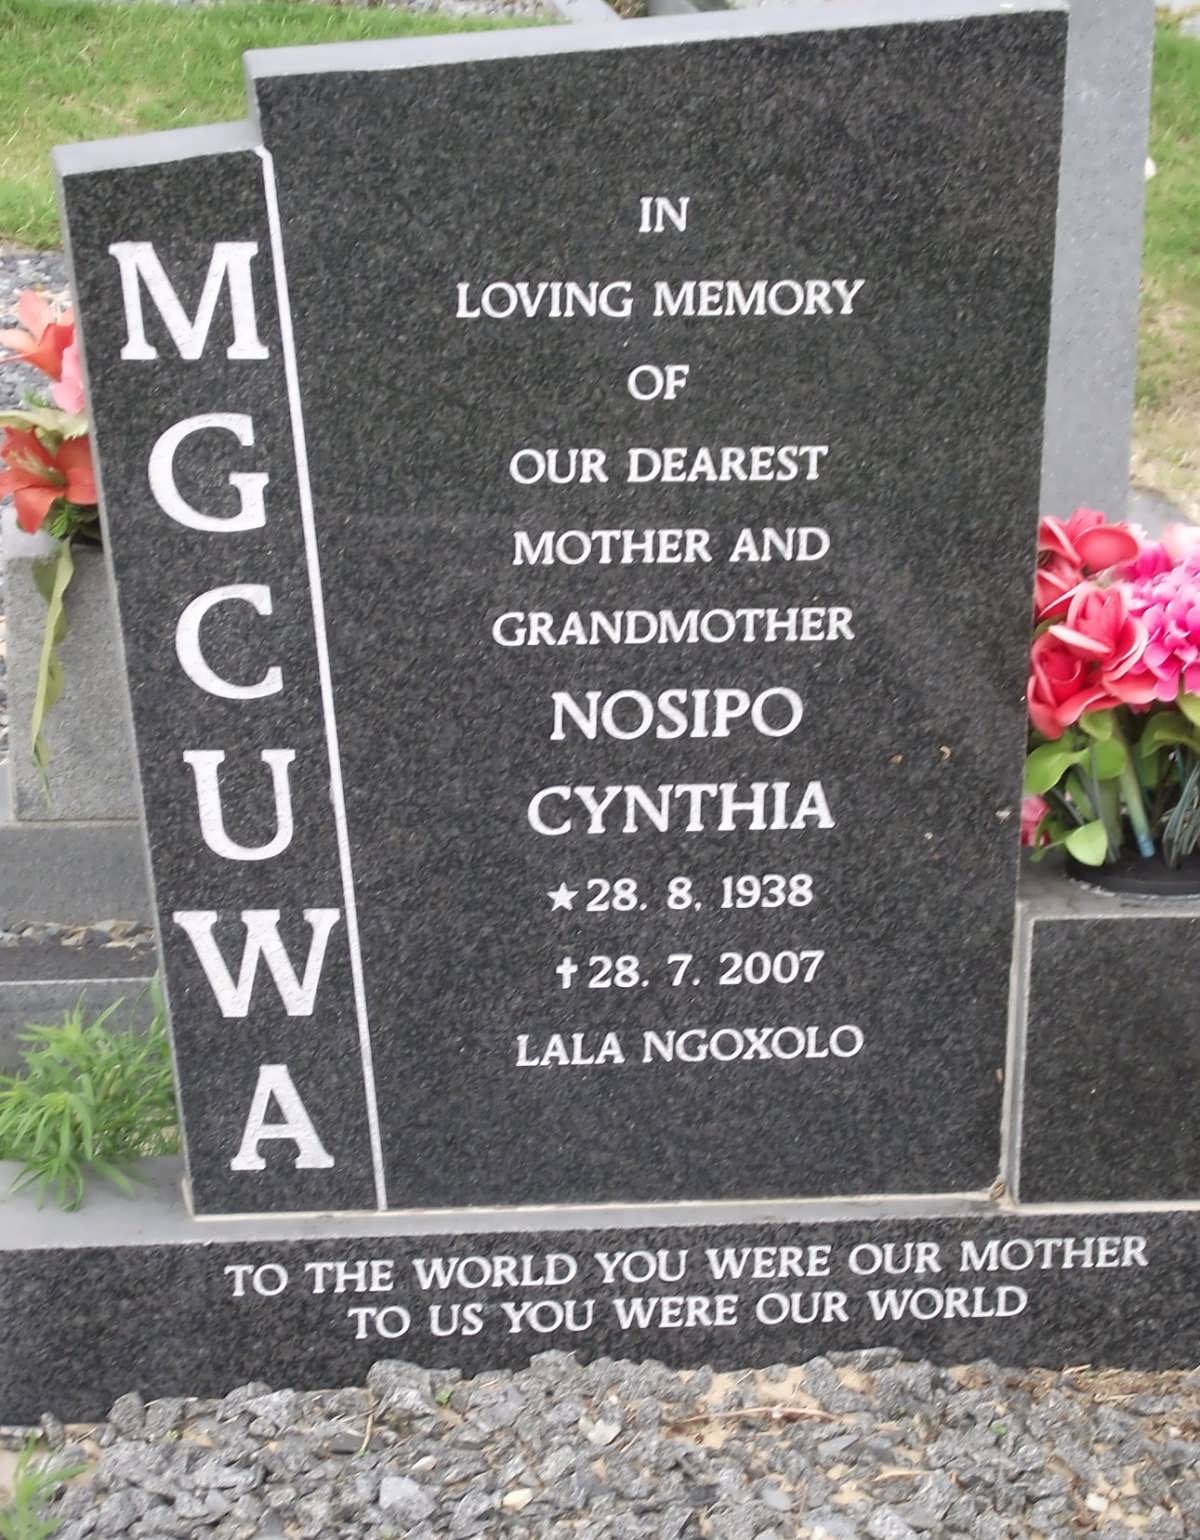 MGCUWA Nosipo Cynthia 1938-2007